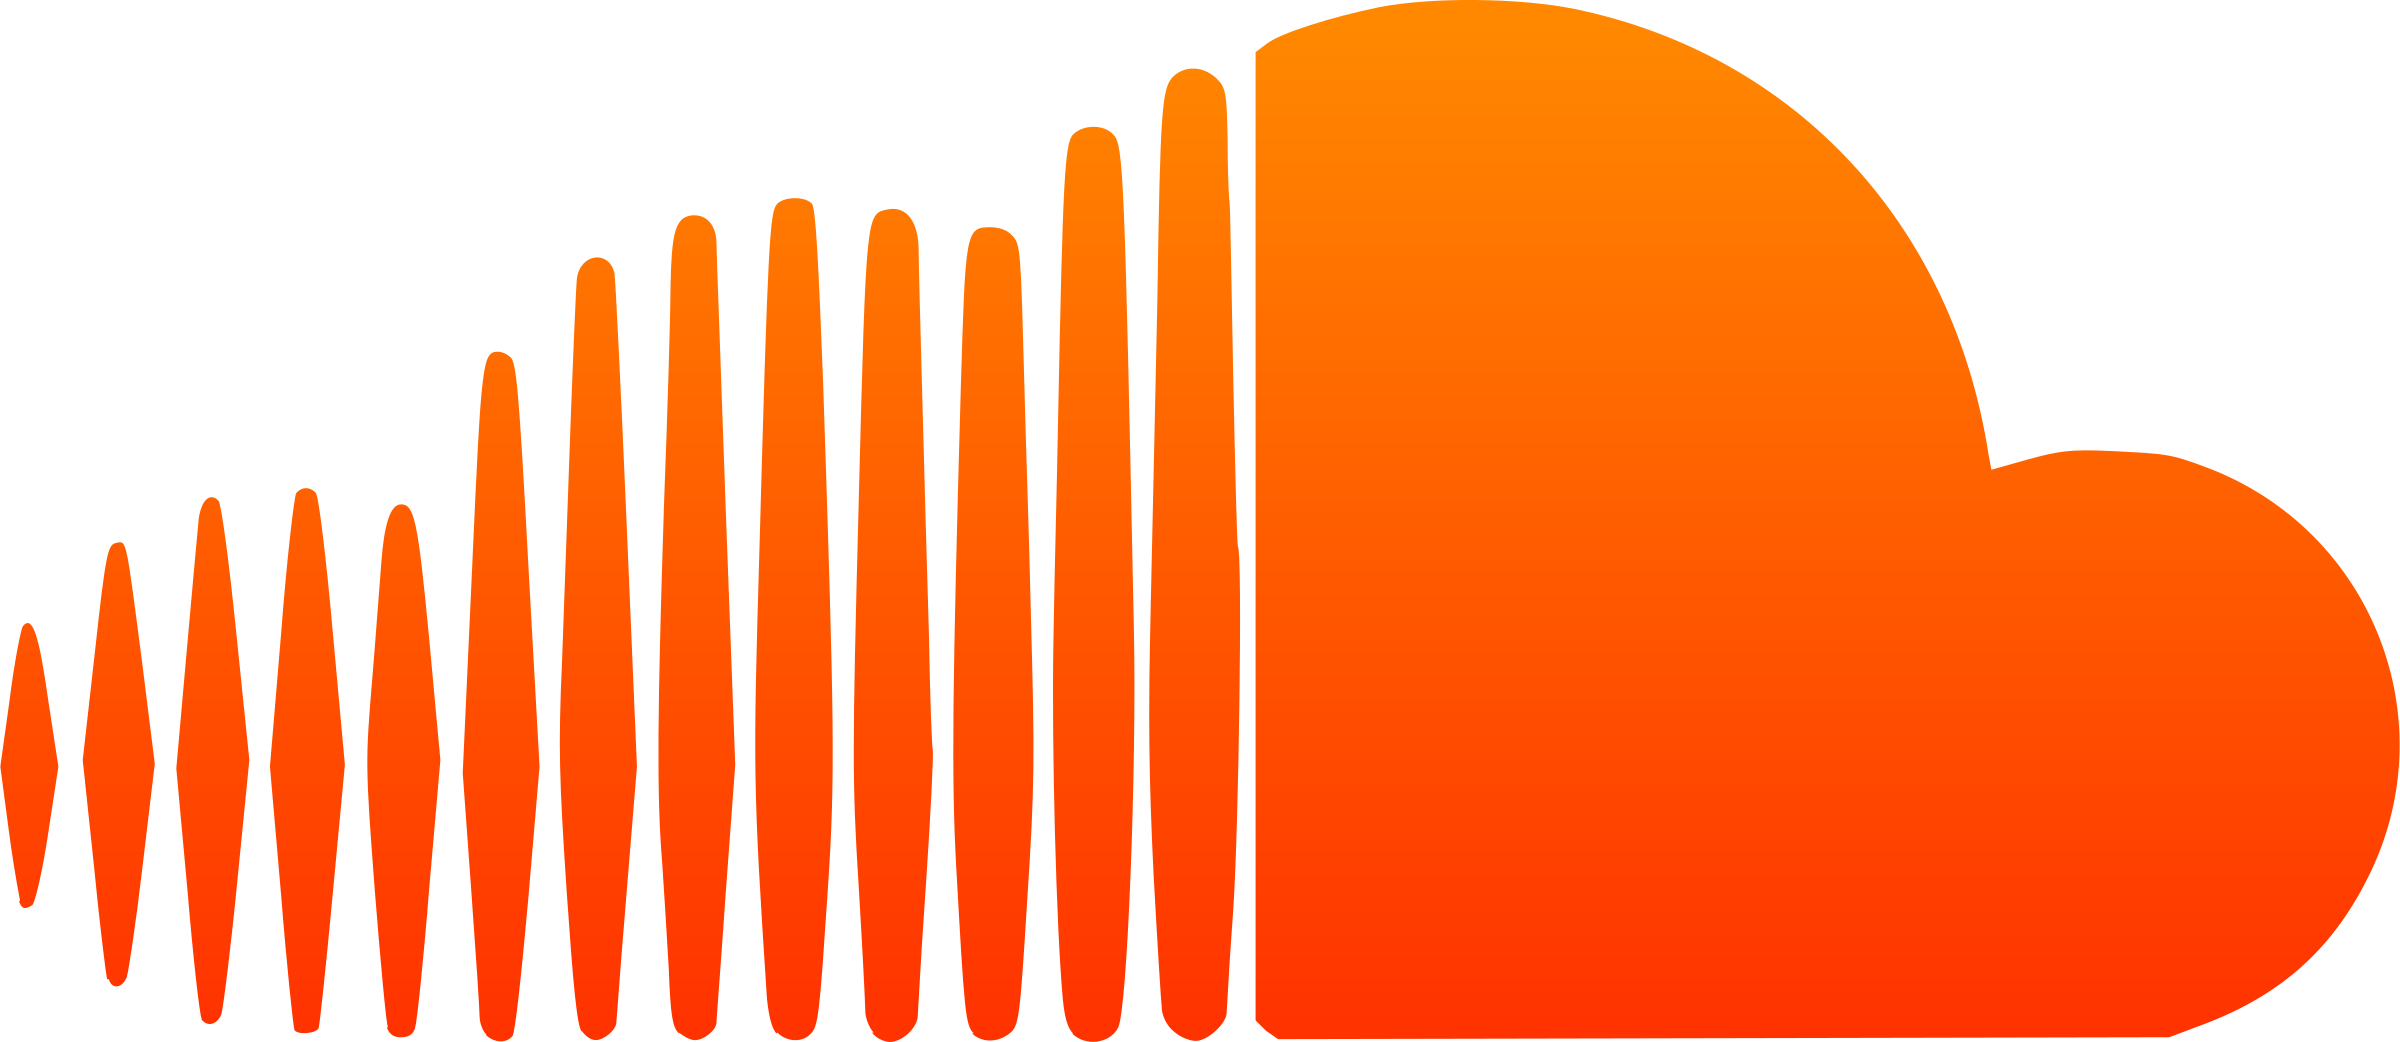 Soundcloud Logo PNG images, Download Soundcloud icons - Free